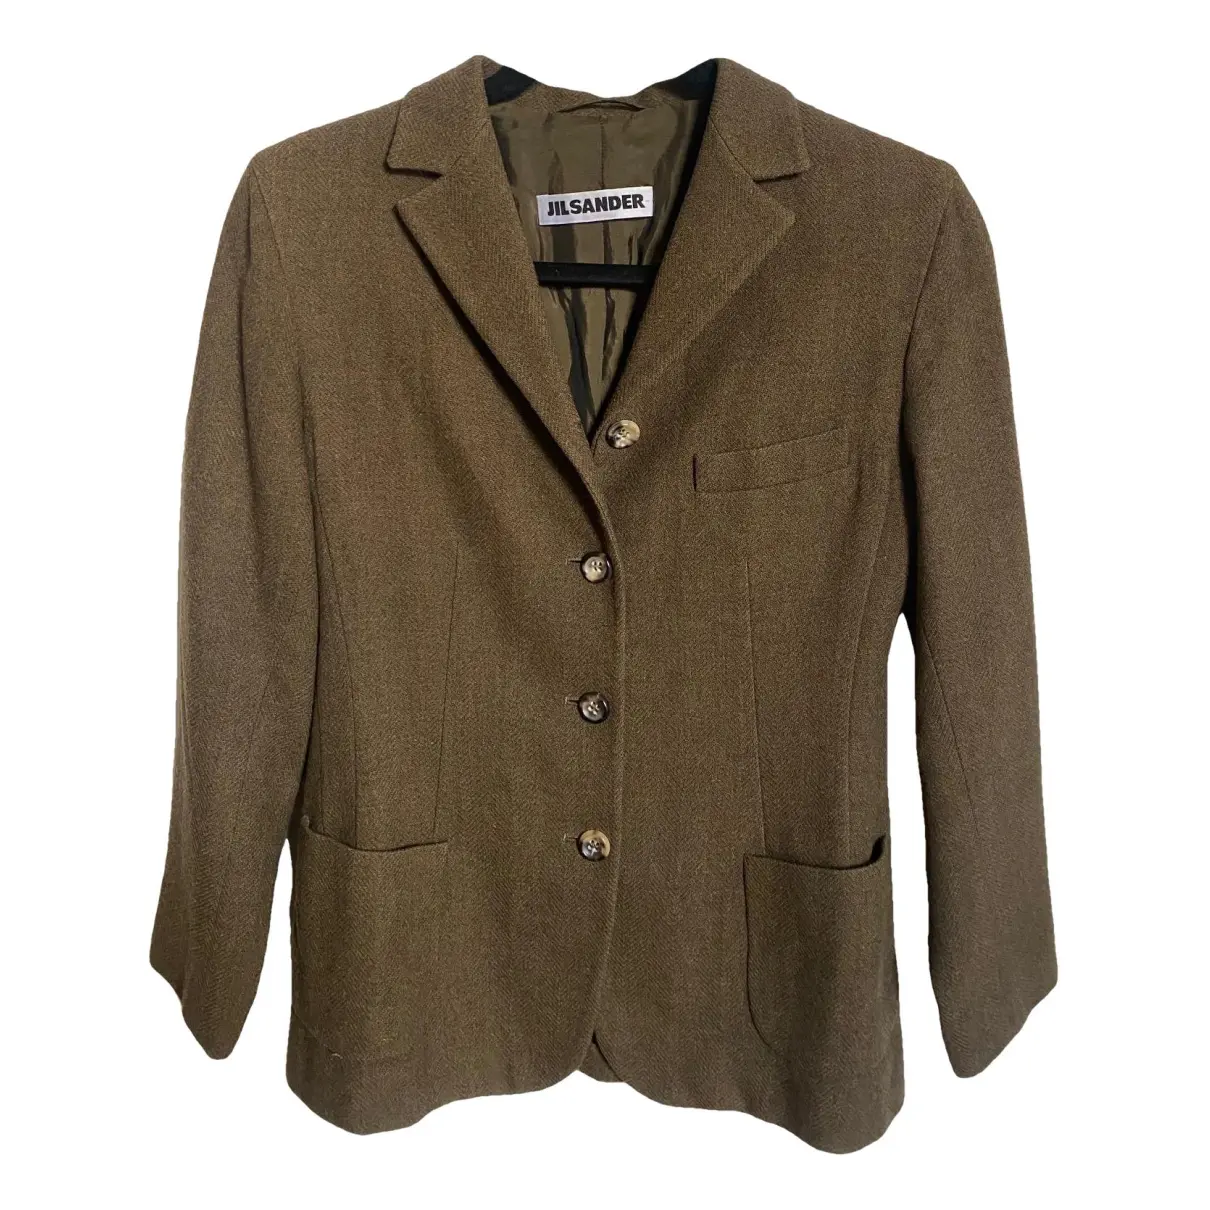 Wool jacket Jil Sander Black size 6 US in Wool - 41815131